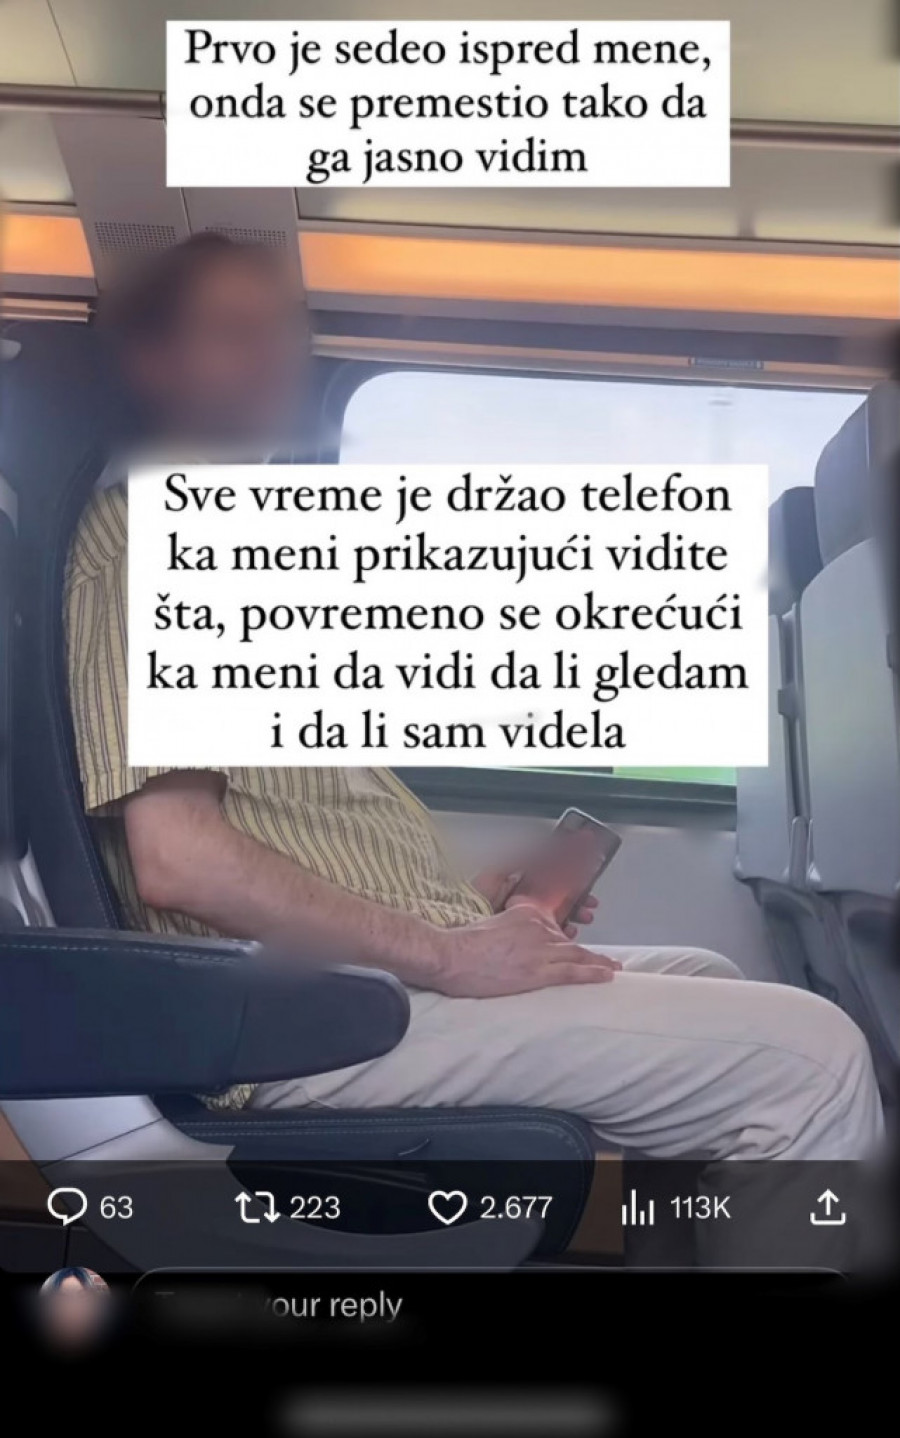 Tea je vozom krenula u Novi Sad: Nepoznati muškarac je uznemiravao vulgarnostima, ona sve to objavila i krenuo je još gori pakao